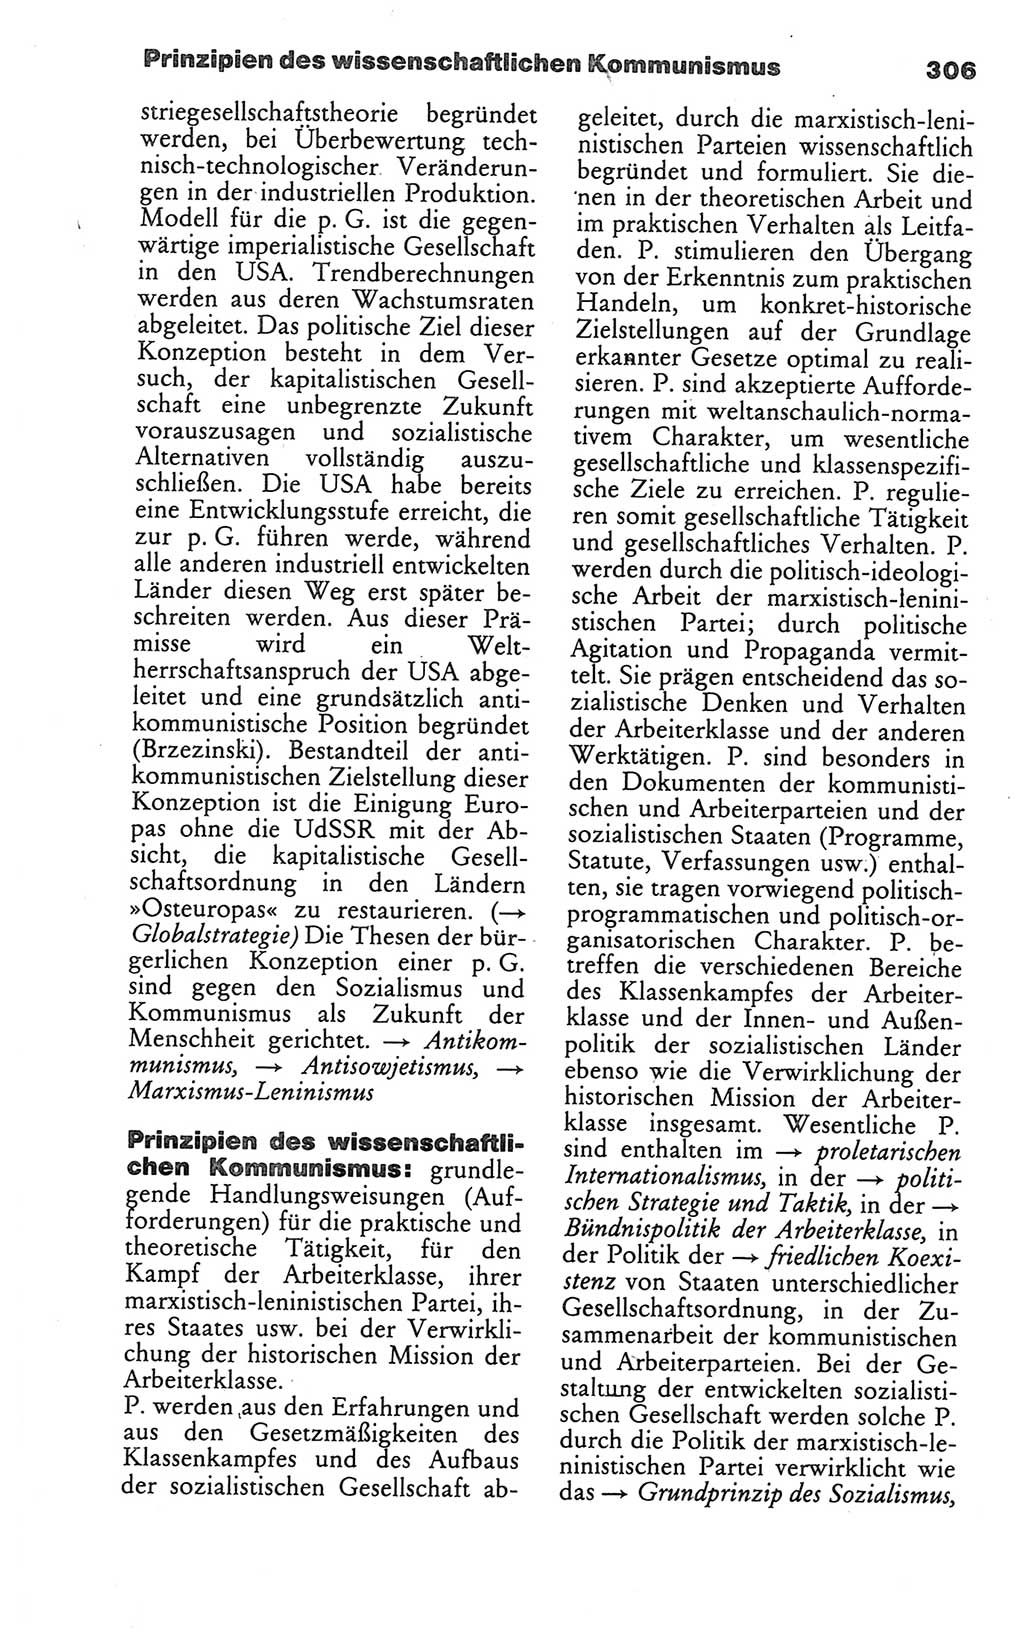 Wörterbuch des wissenschaftlichen Kommunismus [Deutsche Demokratische Republik (DDR)] 1986, Seite 306 (Wb. wiss. Komm. DDR 1986, S. 306)